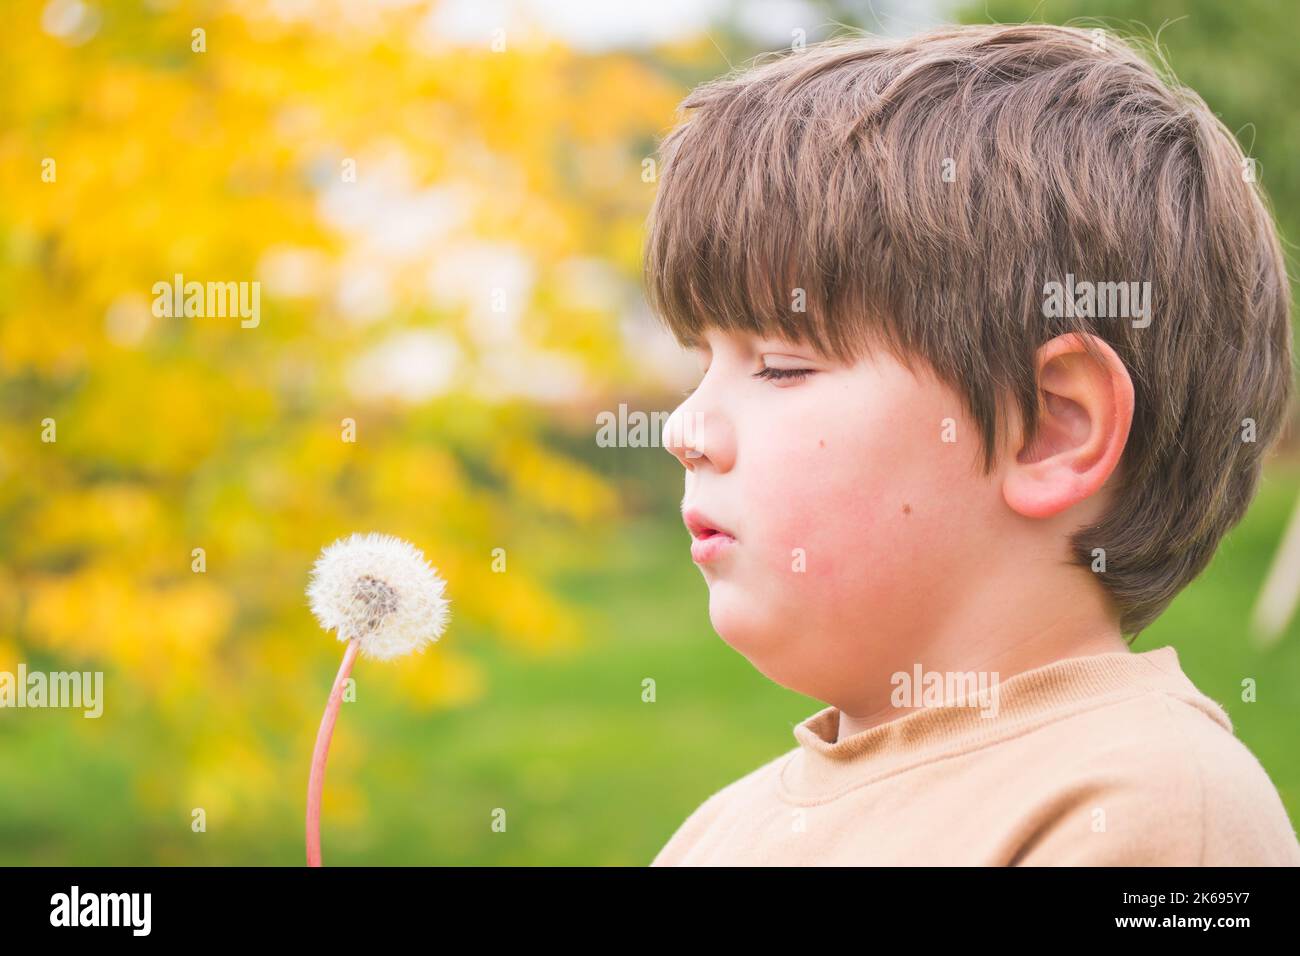 Junge bereit, die Samen von Dandelion in die Luft zu blasen. Porträt eines Kindes, das einen Dandelion hält. Platz für Text kopieren. Stockfoto